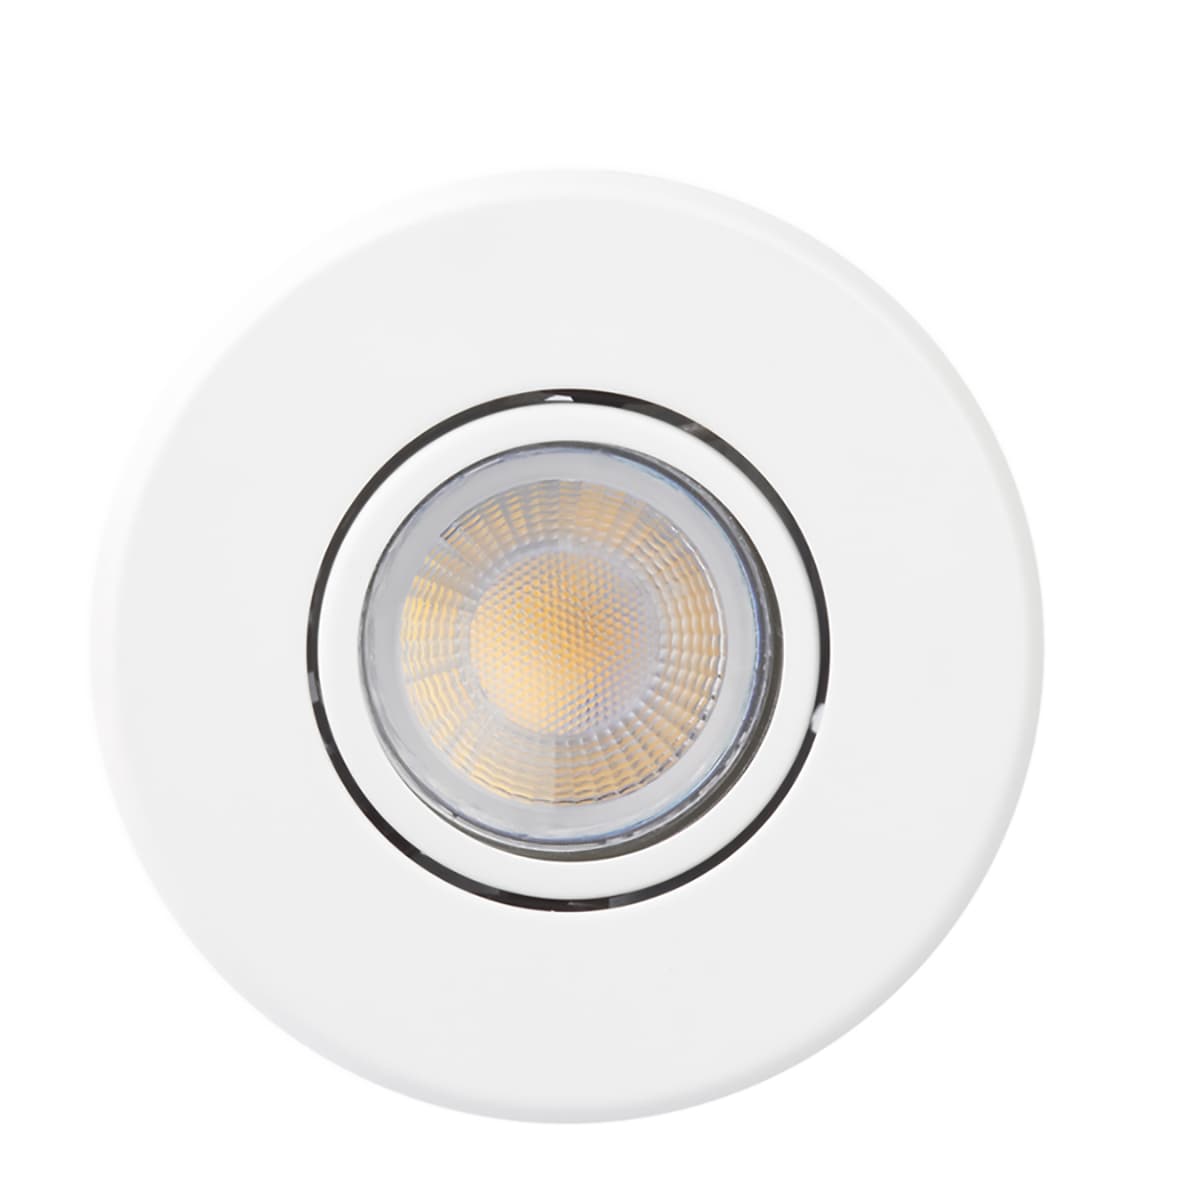 1-10er Sets 230v LED ceiling Recessed spotlights Baloo Stainless & gu10 3w COB LED spots 